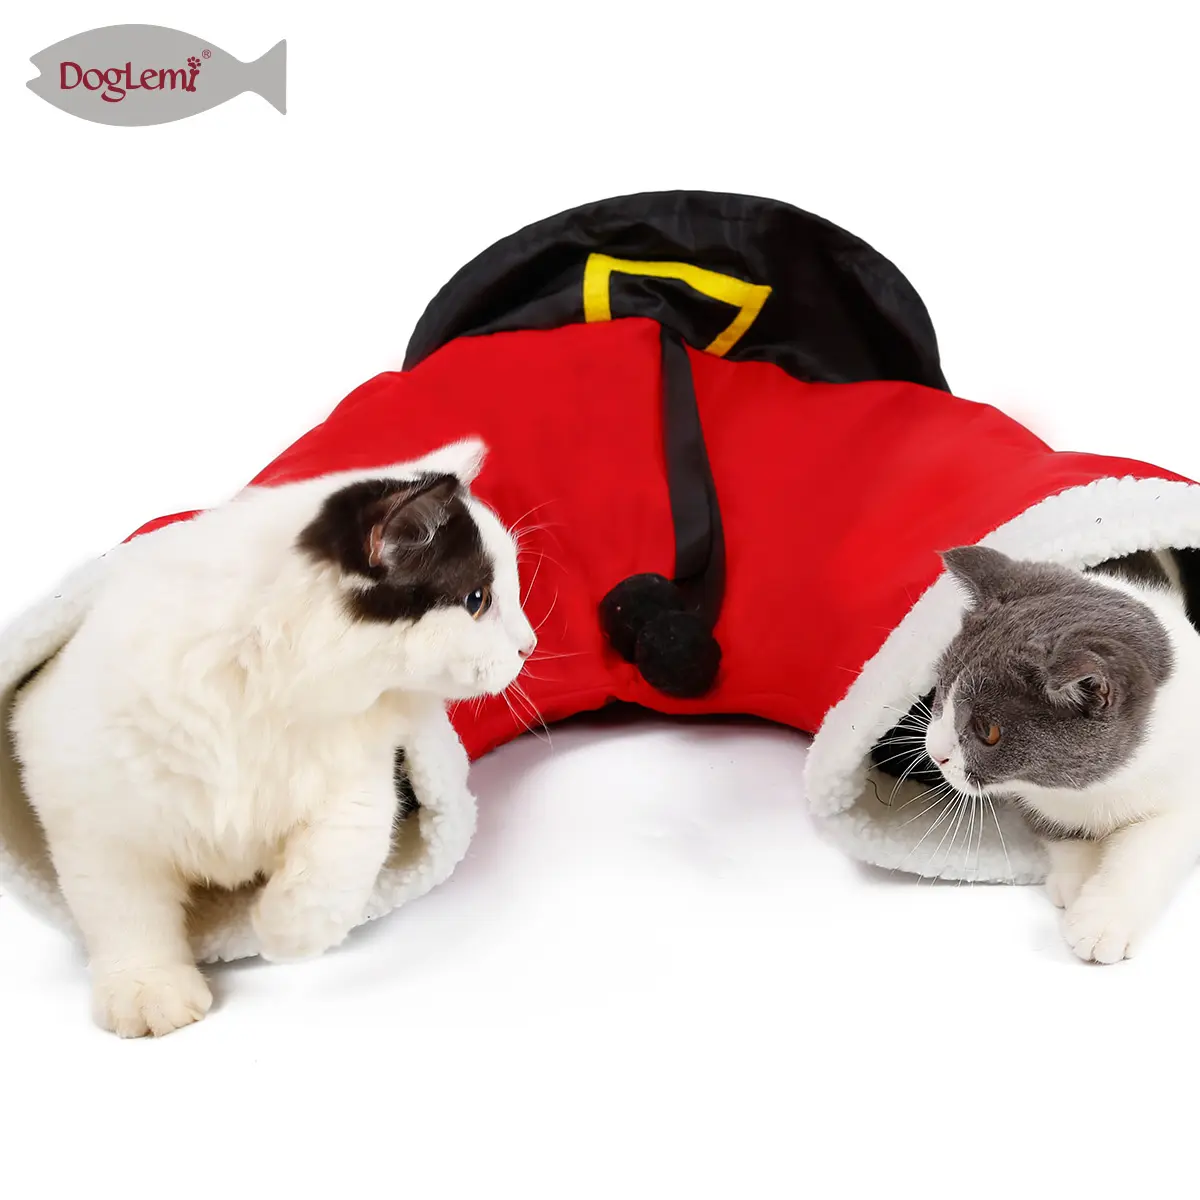 Pet туннель для кошек складная 3 Way туннель для кошек мешок и штанов с Санта-Клаусом Трубки Игрушка